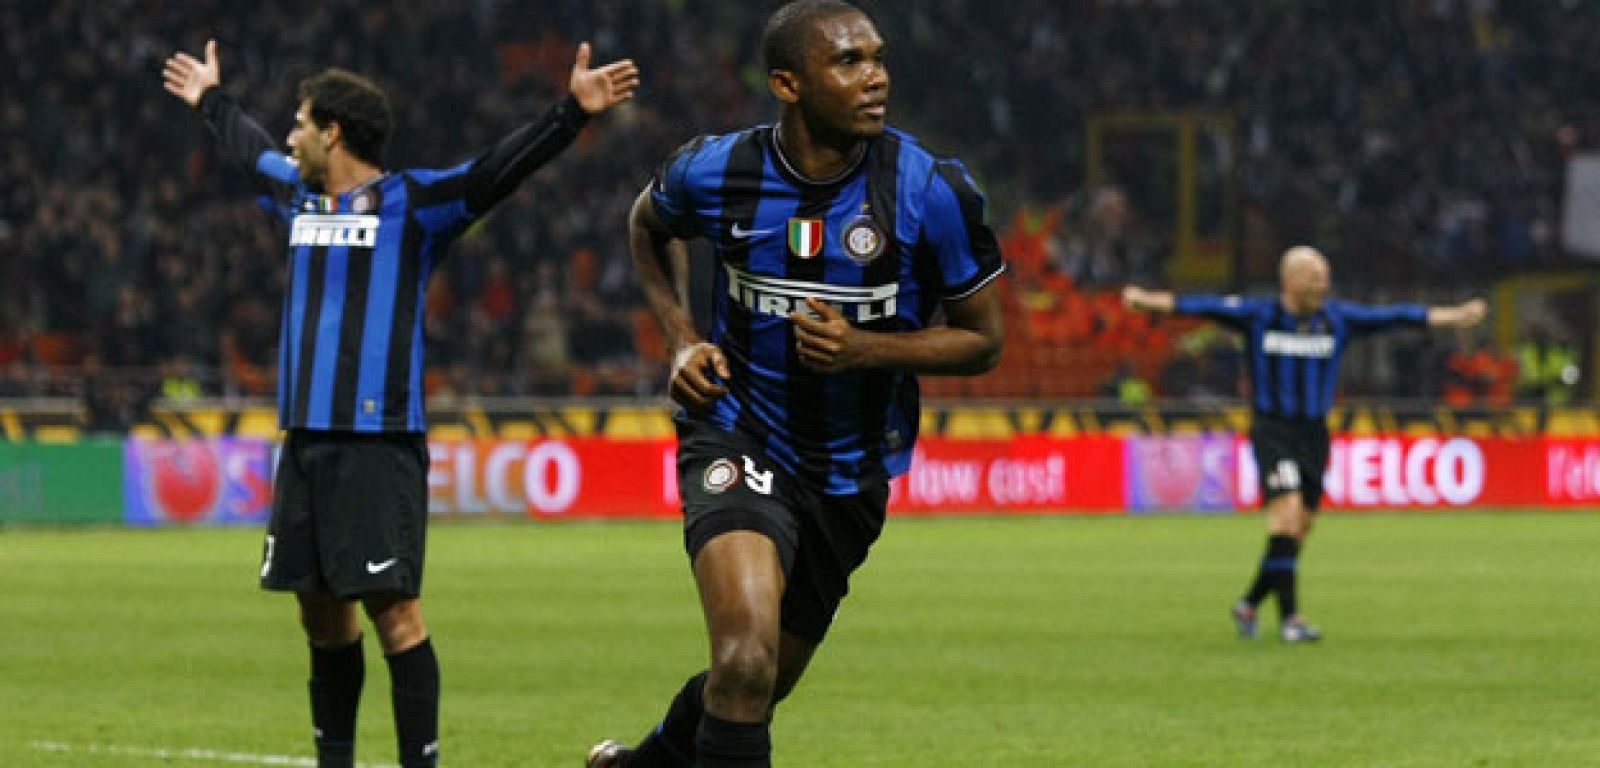 El Inter de Milán no pasa por su mejor momento de juegos y resultados.